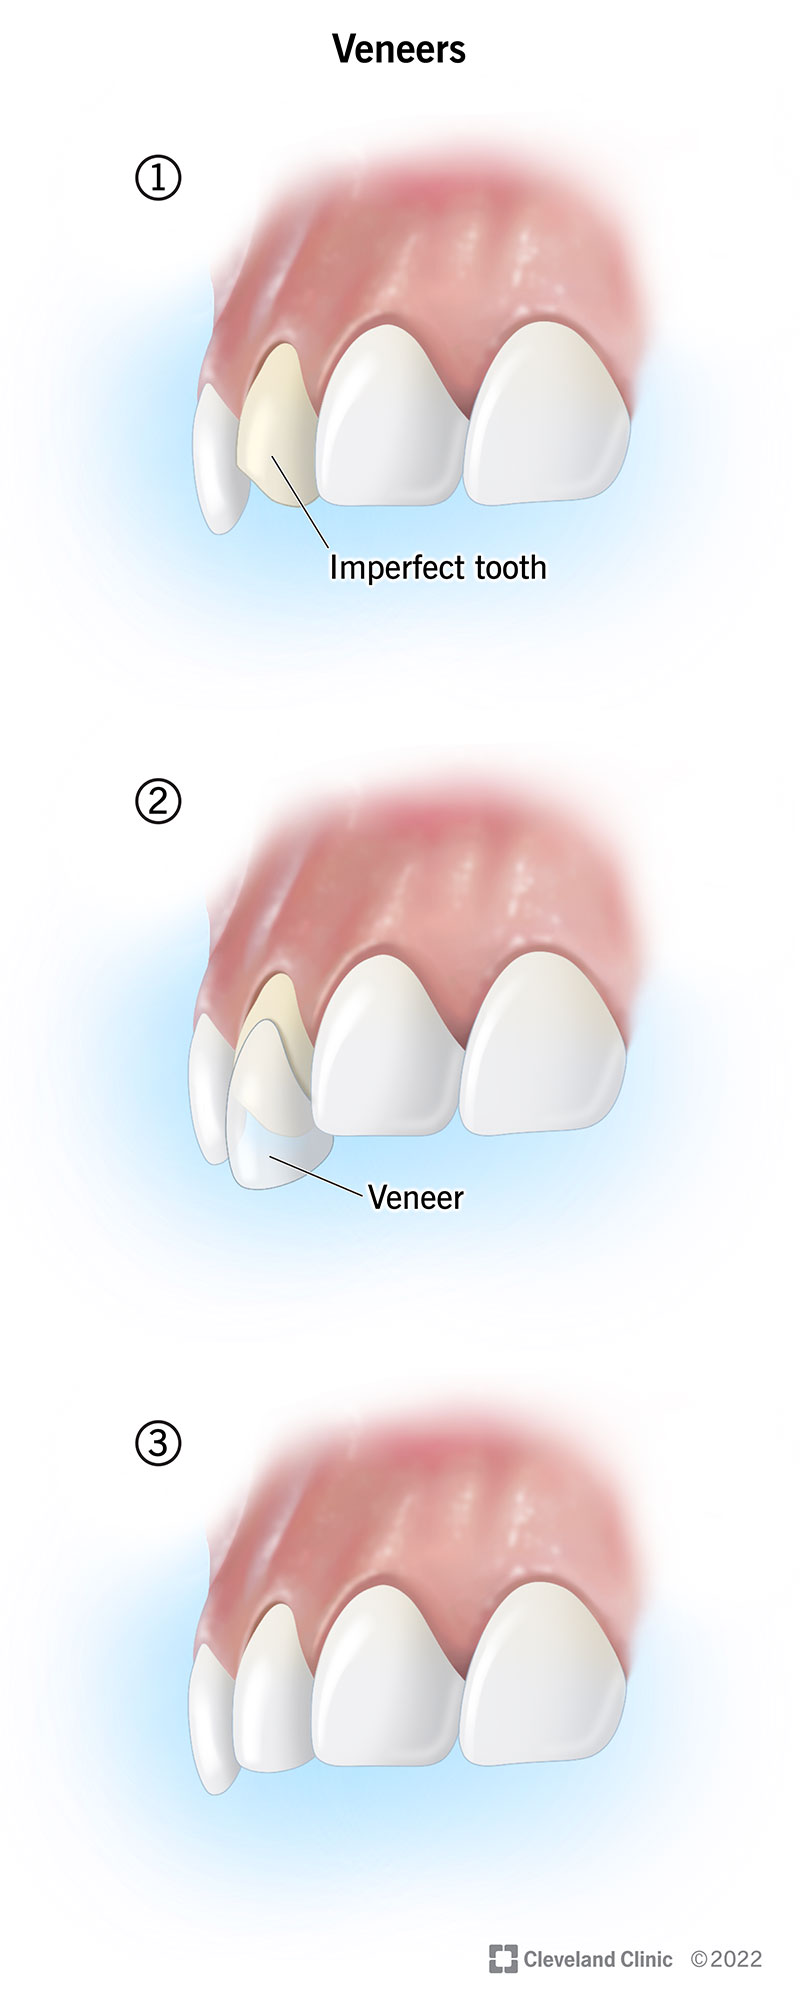 Are Dental Veneers Safe?